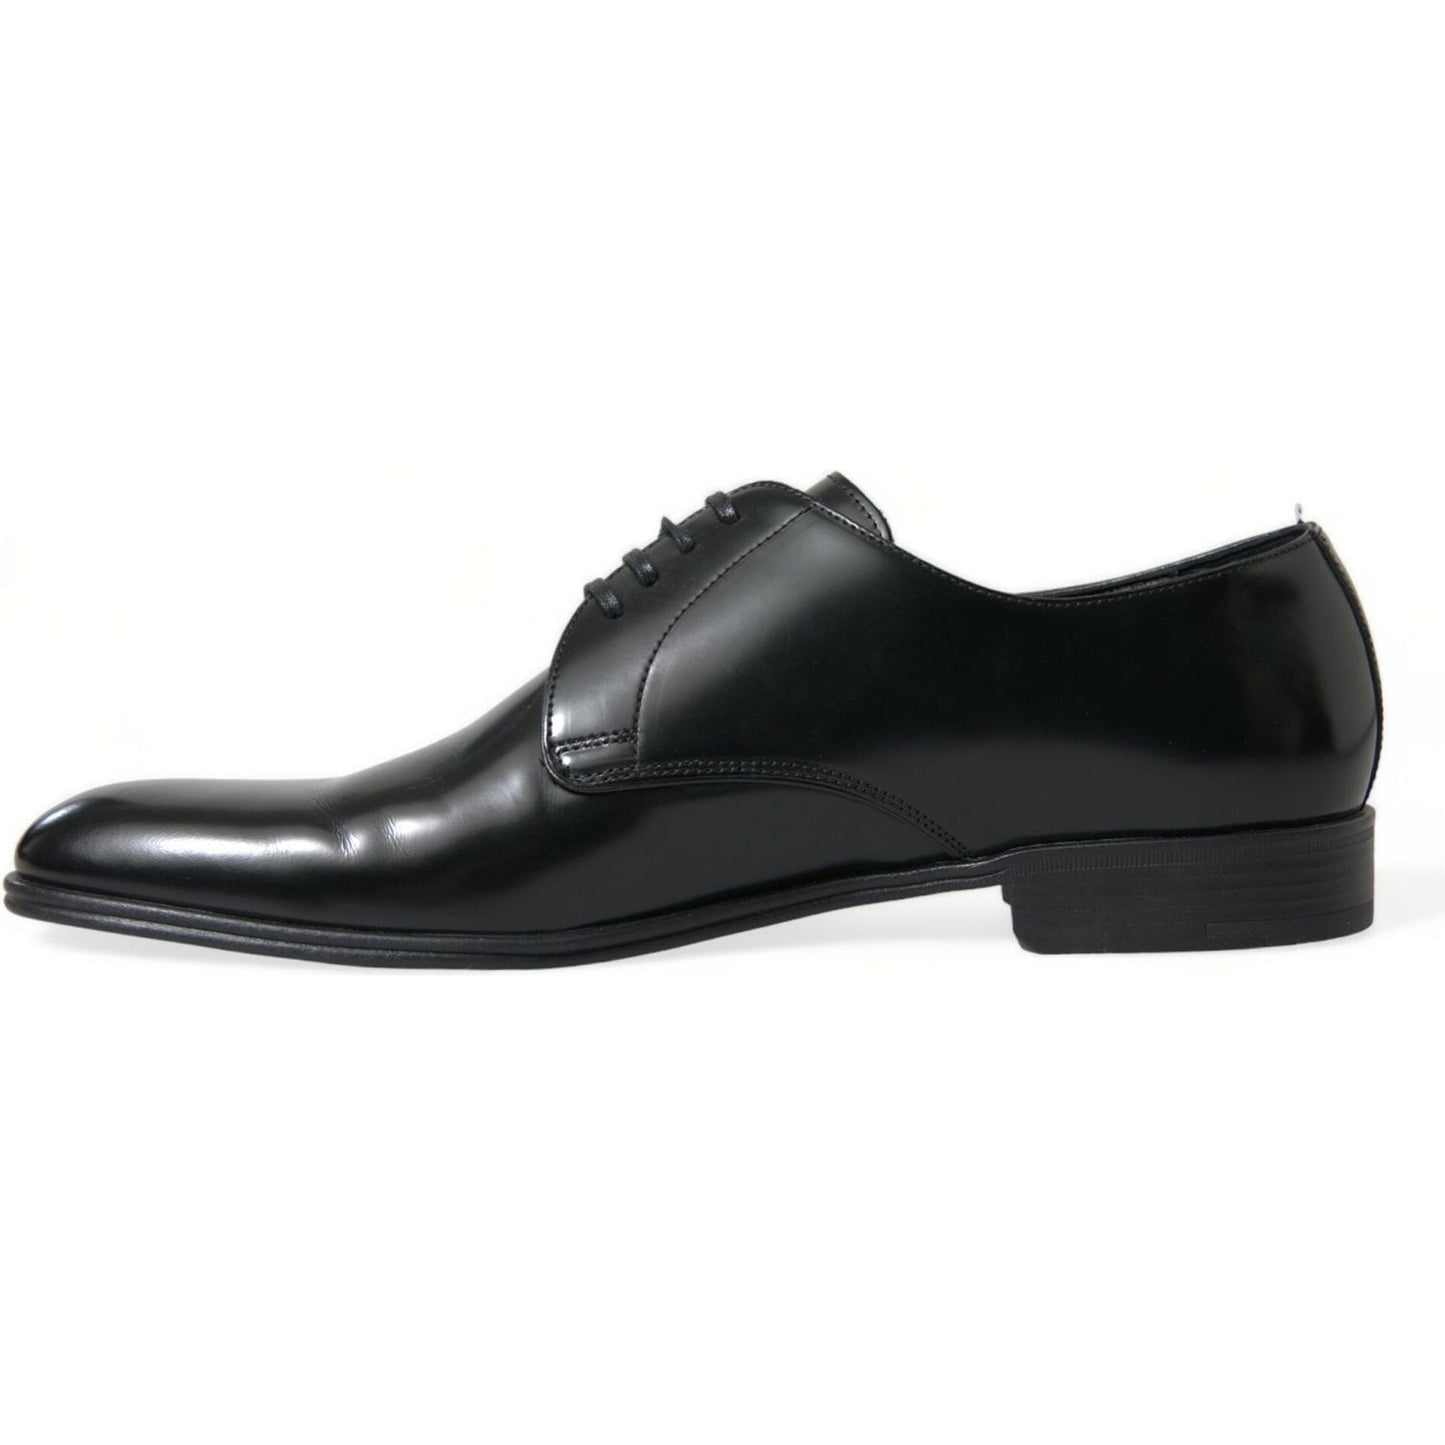 Dolce & Gabbana Elegant Black Leather Derby Formal Shoes black-leather-lace-up-men-dress-derby-shoes-1